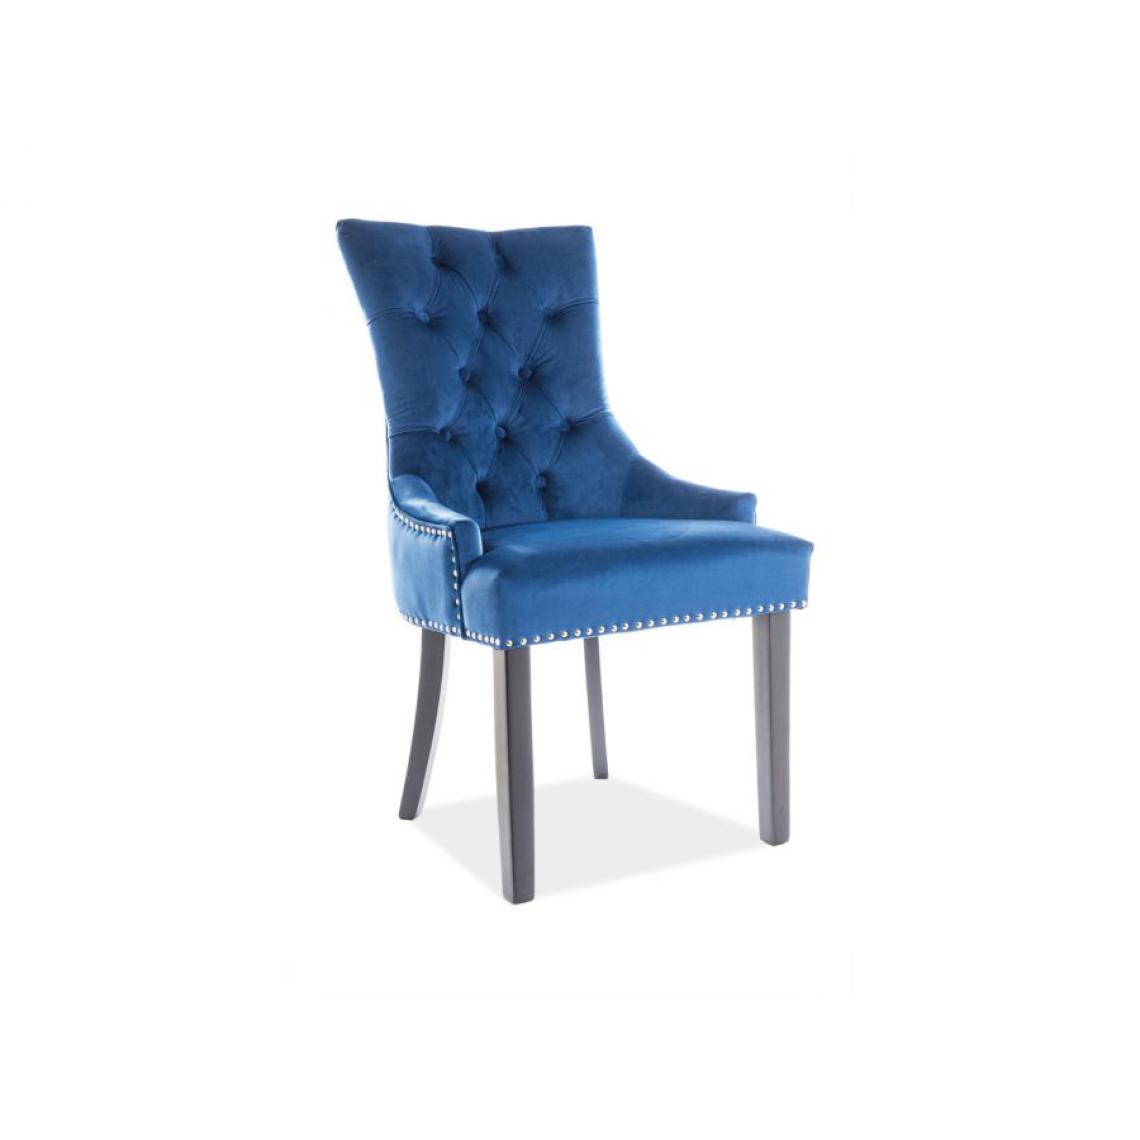 Hucoco - EDWARG | Chaise élégante rembourrée bureau salon | 99x55x45 cm | Rembourrage en velours | Bords décorés | Style glamour - Bleu - Chaises